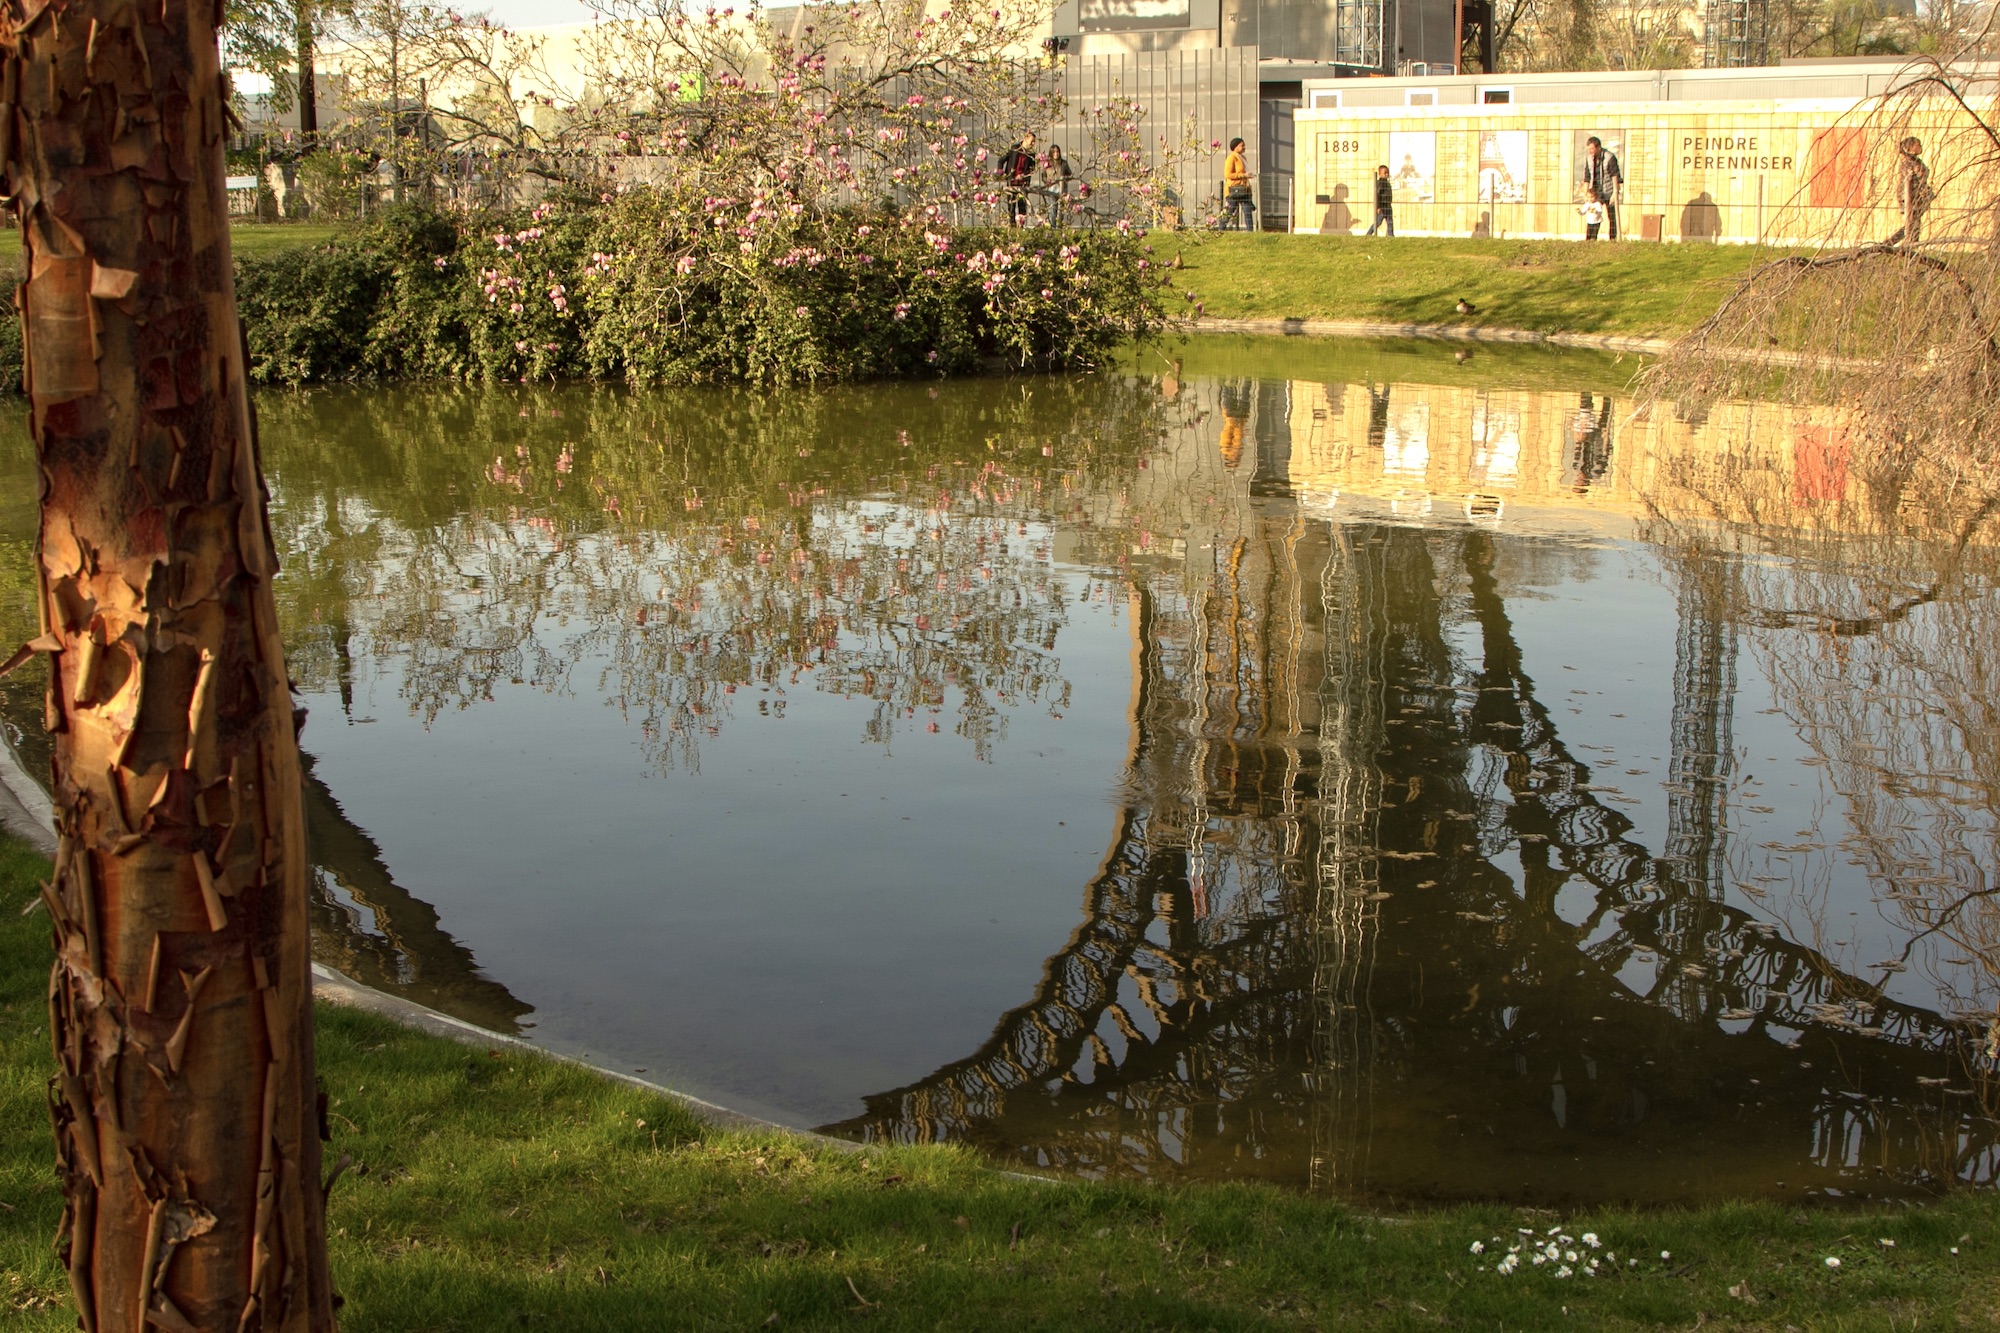 Reflection in west garden pond